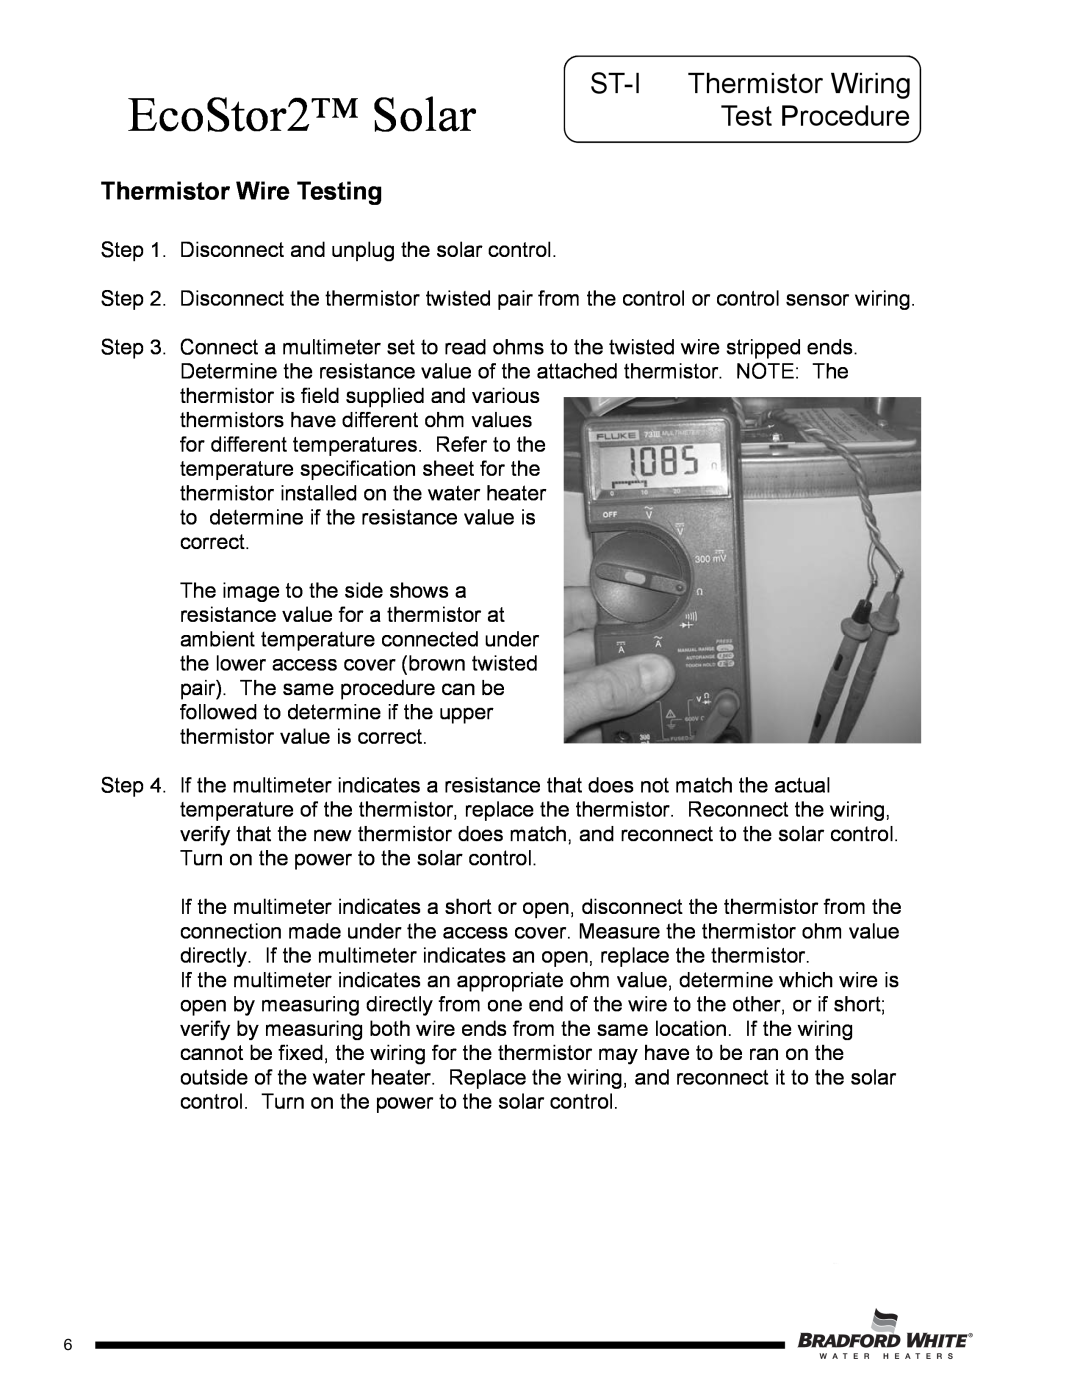 Bradford-White Corp SDW265T, SDW275S ST-I Thermistor Wiring Test Procedure, Thermistor Wire Testing, EcoStor2 Solar 